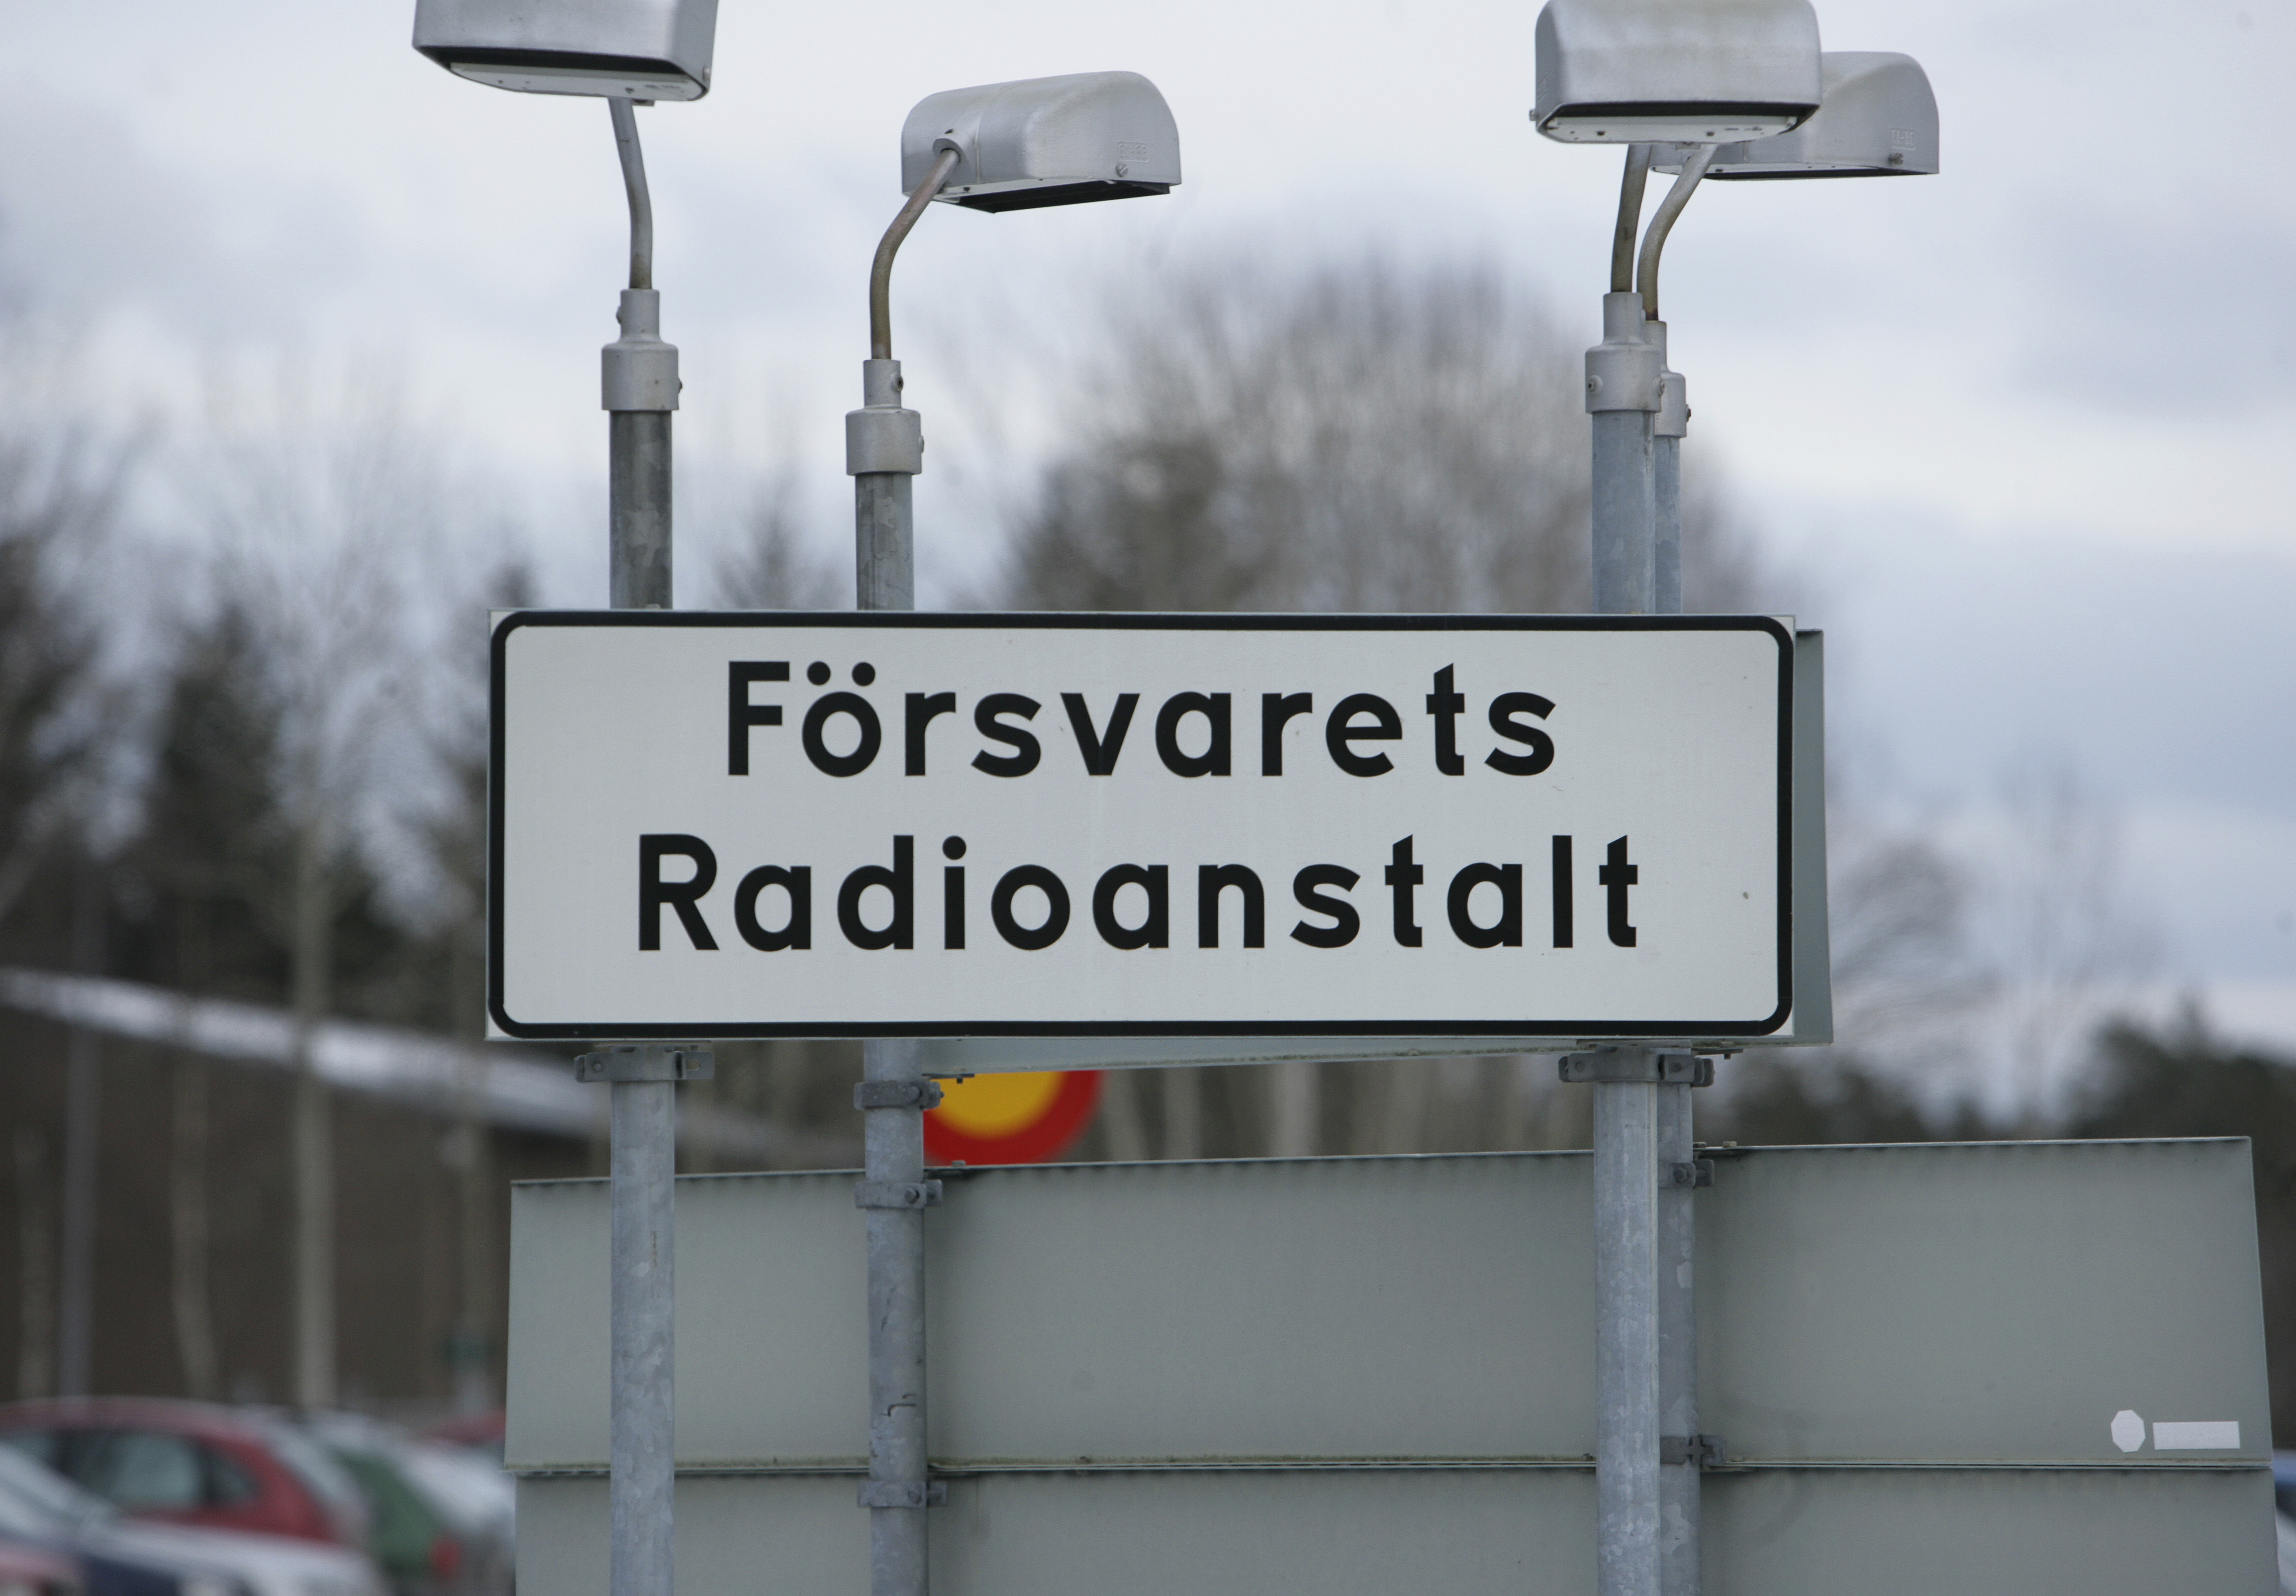 Must rapport oroar den svenska försvarsmakten.